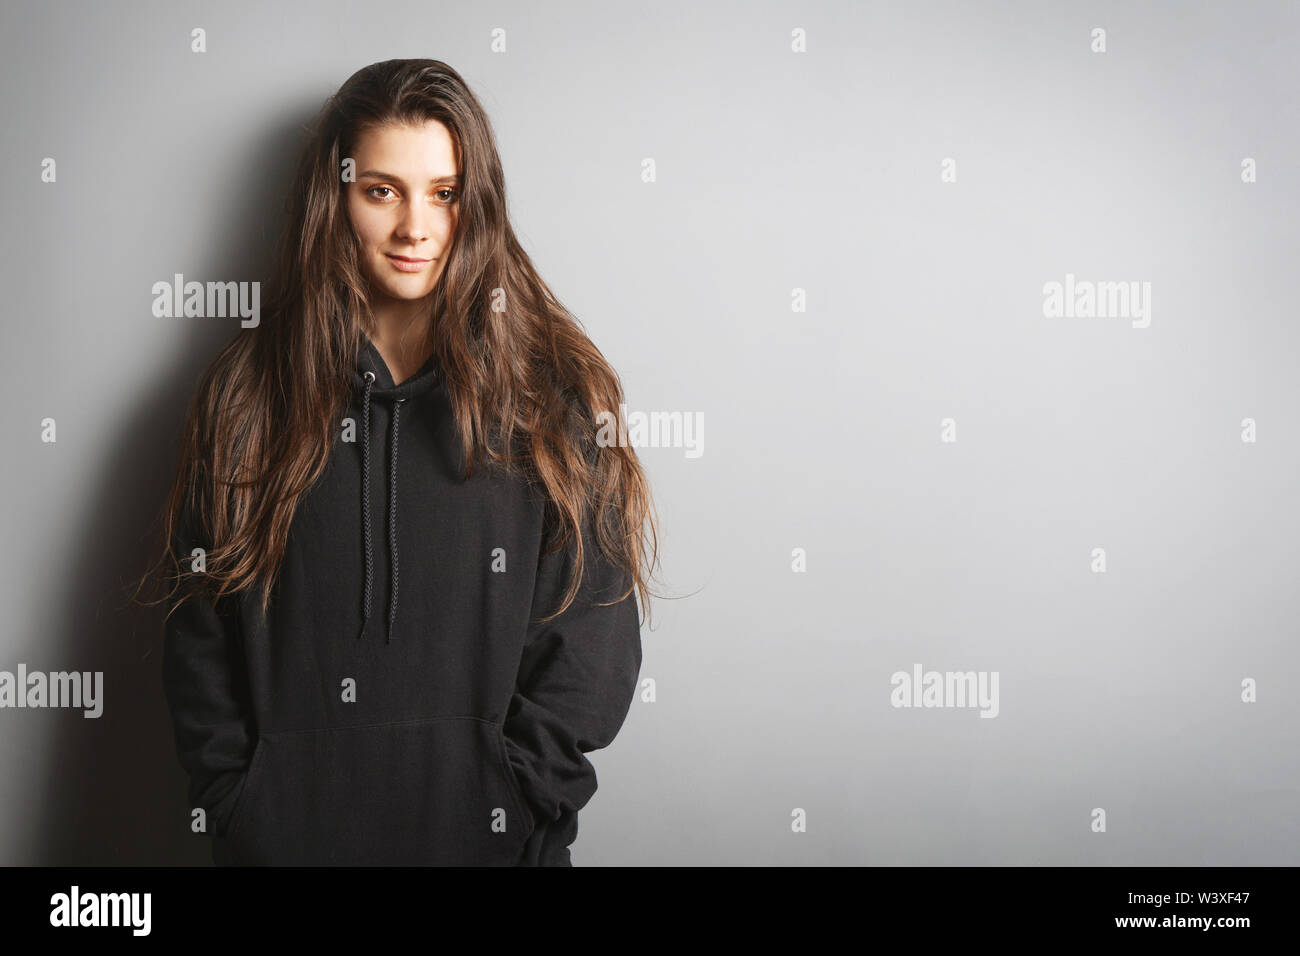 Cool jeune femme avec de longs cheveux de brunette wearing black hoodie sweater leaning against wall avec ses mains dans les poches - fond gris with copy space Banque D'Images